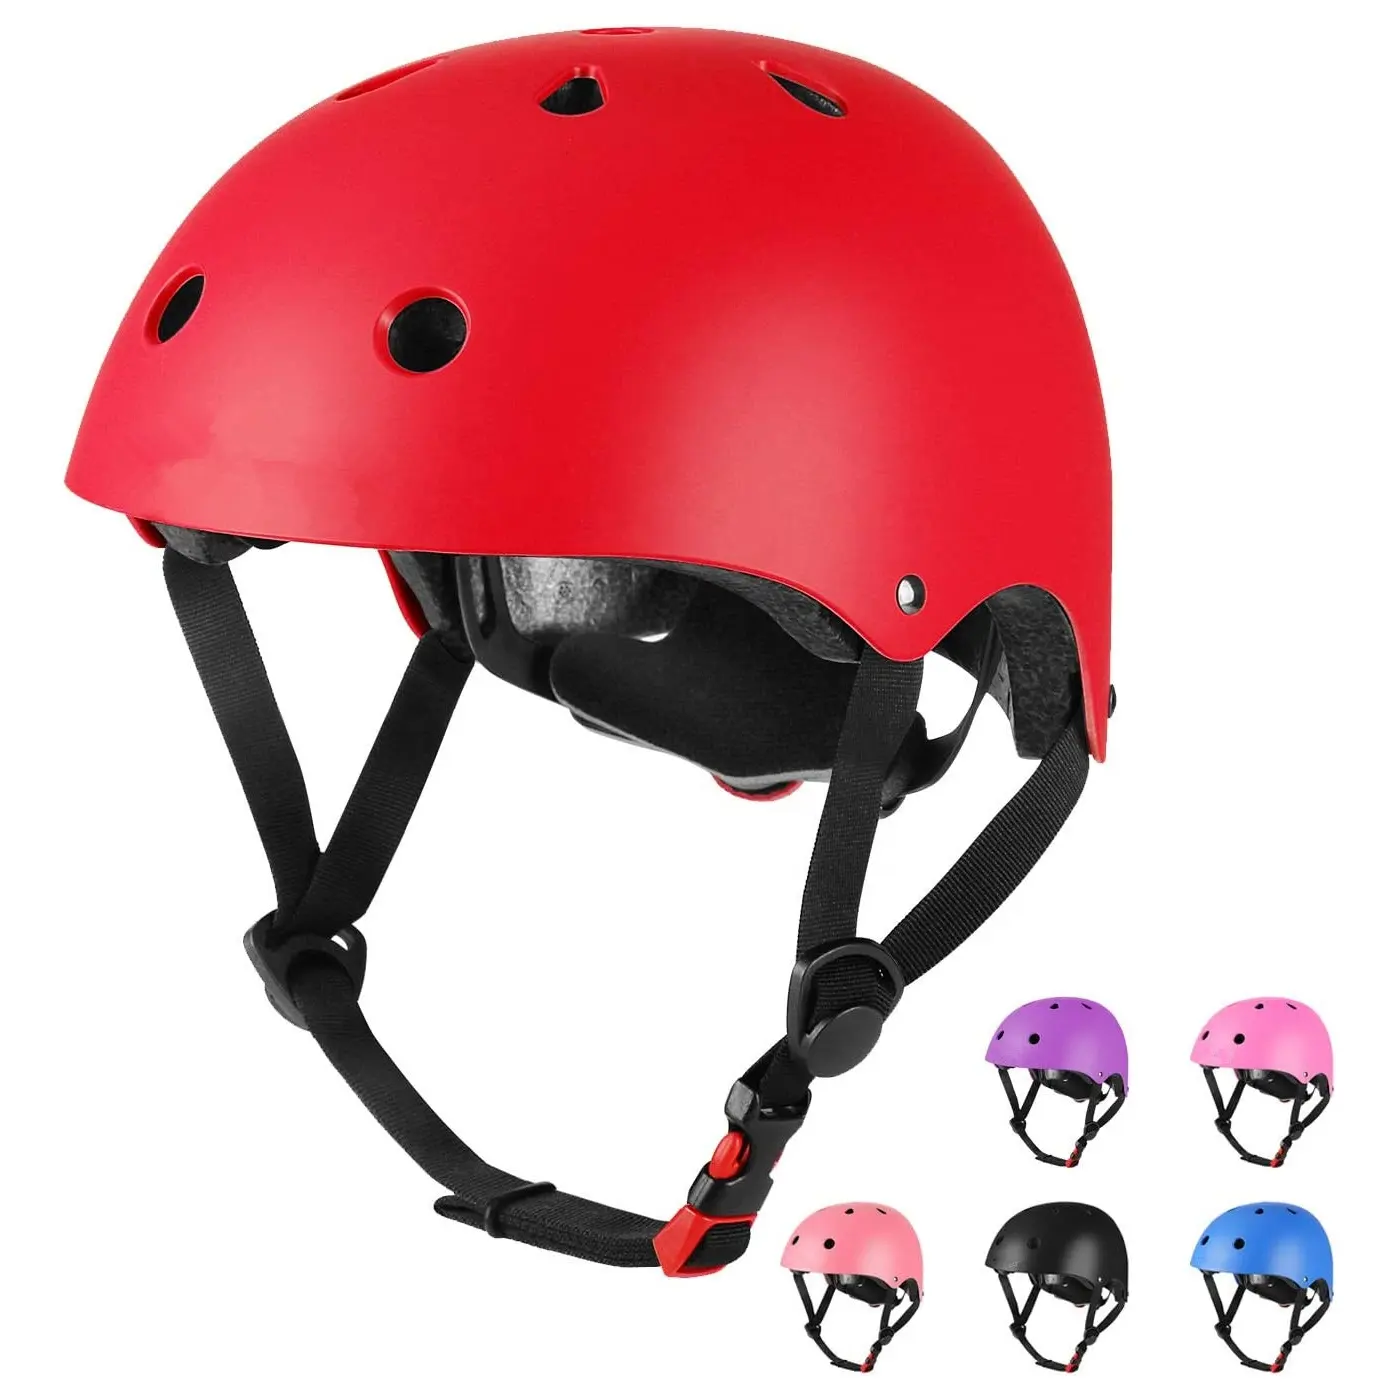 स्कूटर स्पोर्ट्स सेफ्टी हेलमेट के लिए सुरक्षा बच्चों और बच्चों की साइकिलिंग रोड साइकिल बाइक हेलमेट बेचने वाला अच्छा हेलमेट निर्माता